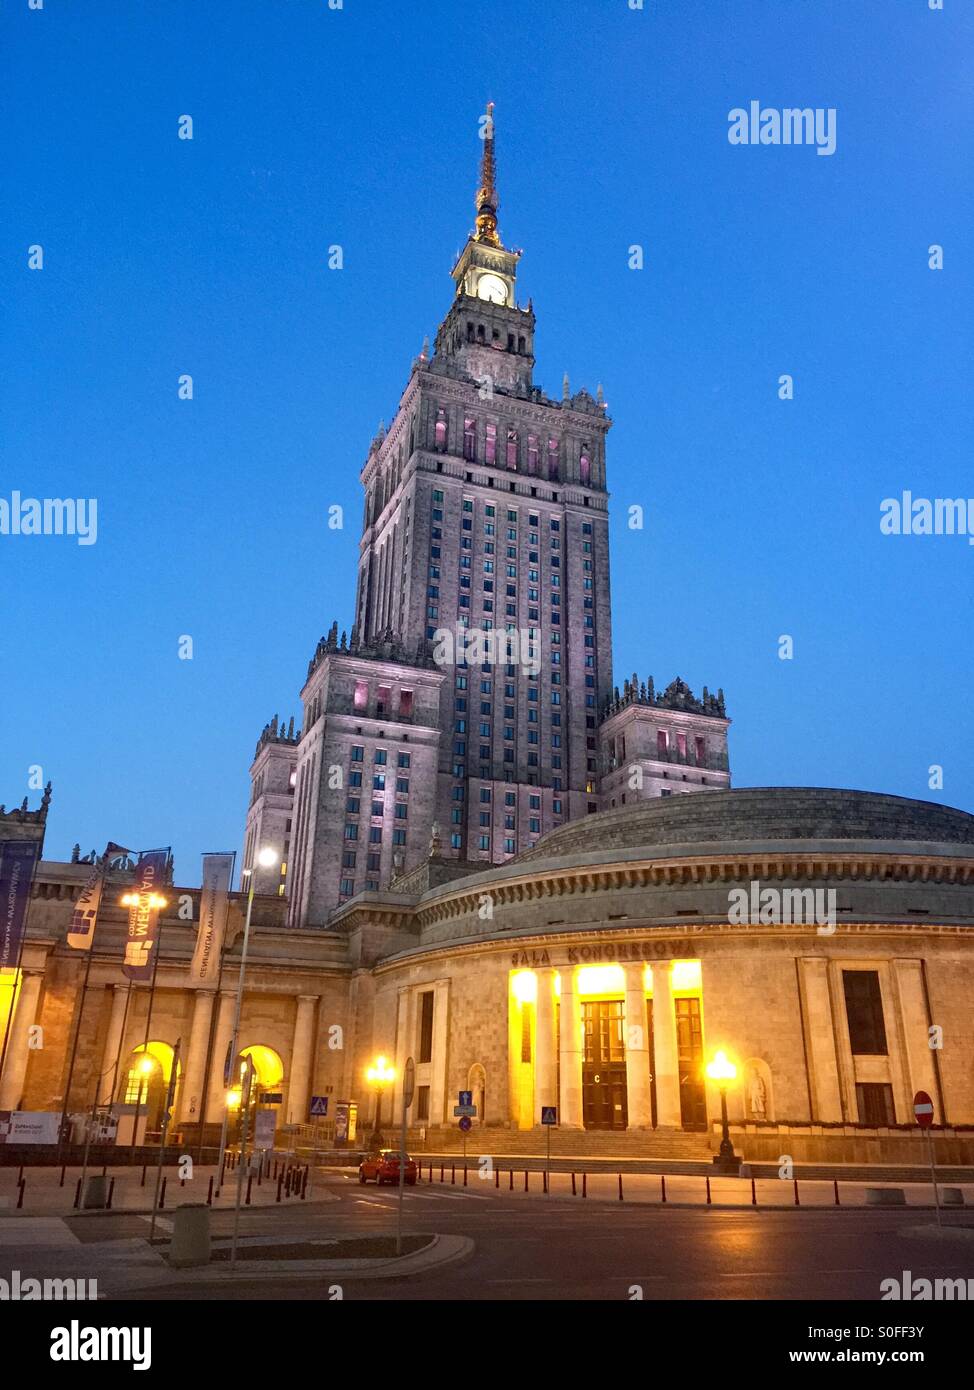 Palac Kultury i Nauki w Warszawie Stock Photo